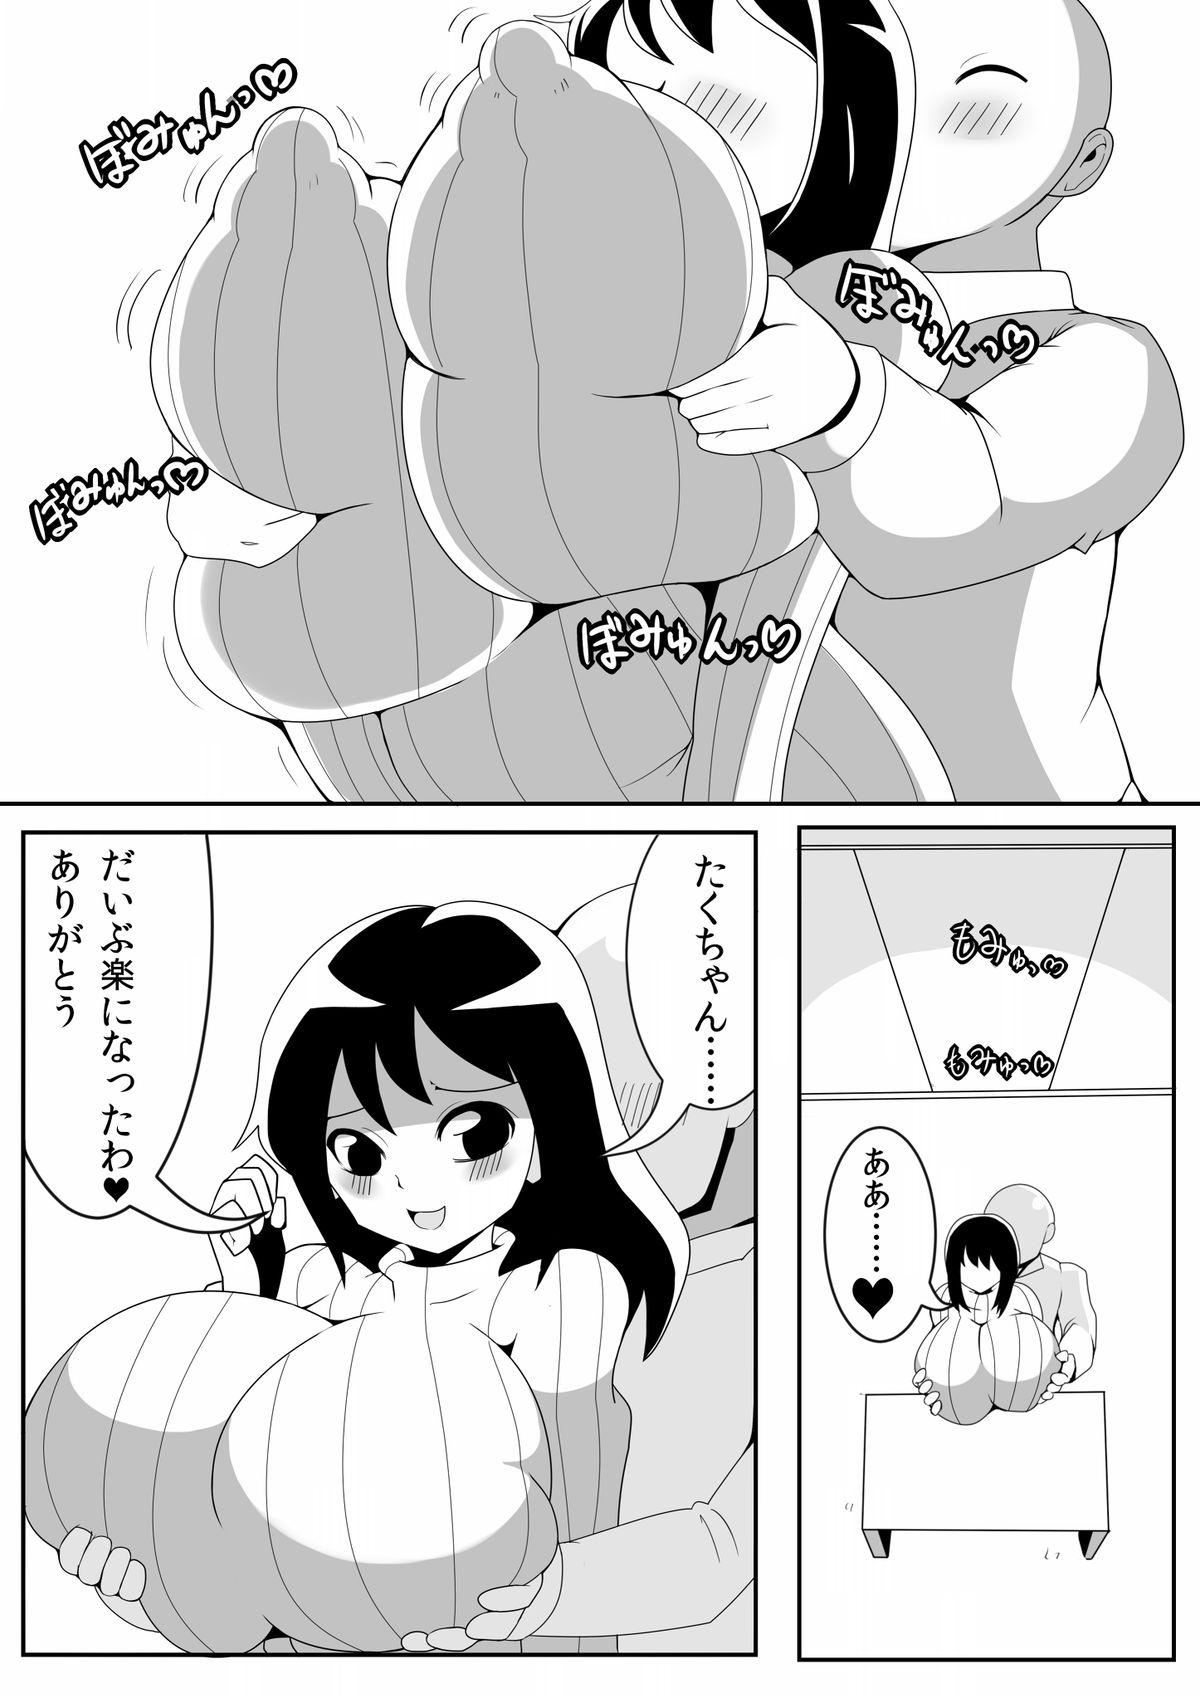 Mms Asaokitara Oppai Konnani ga Okkiku Nacchatta First Time - Page 9